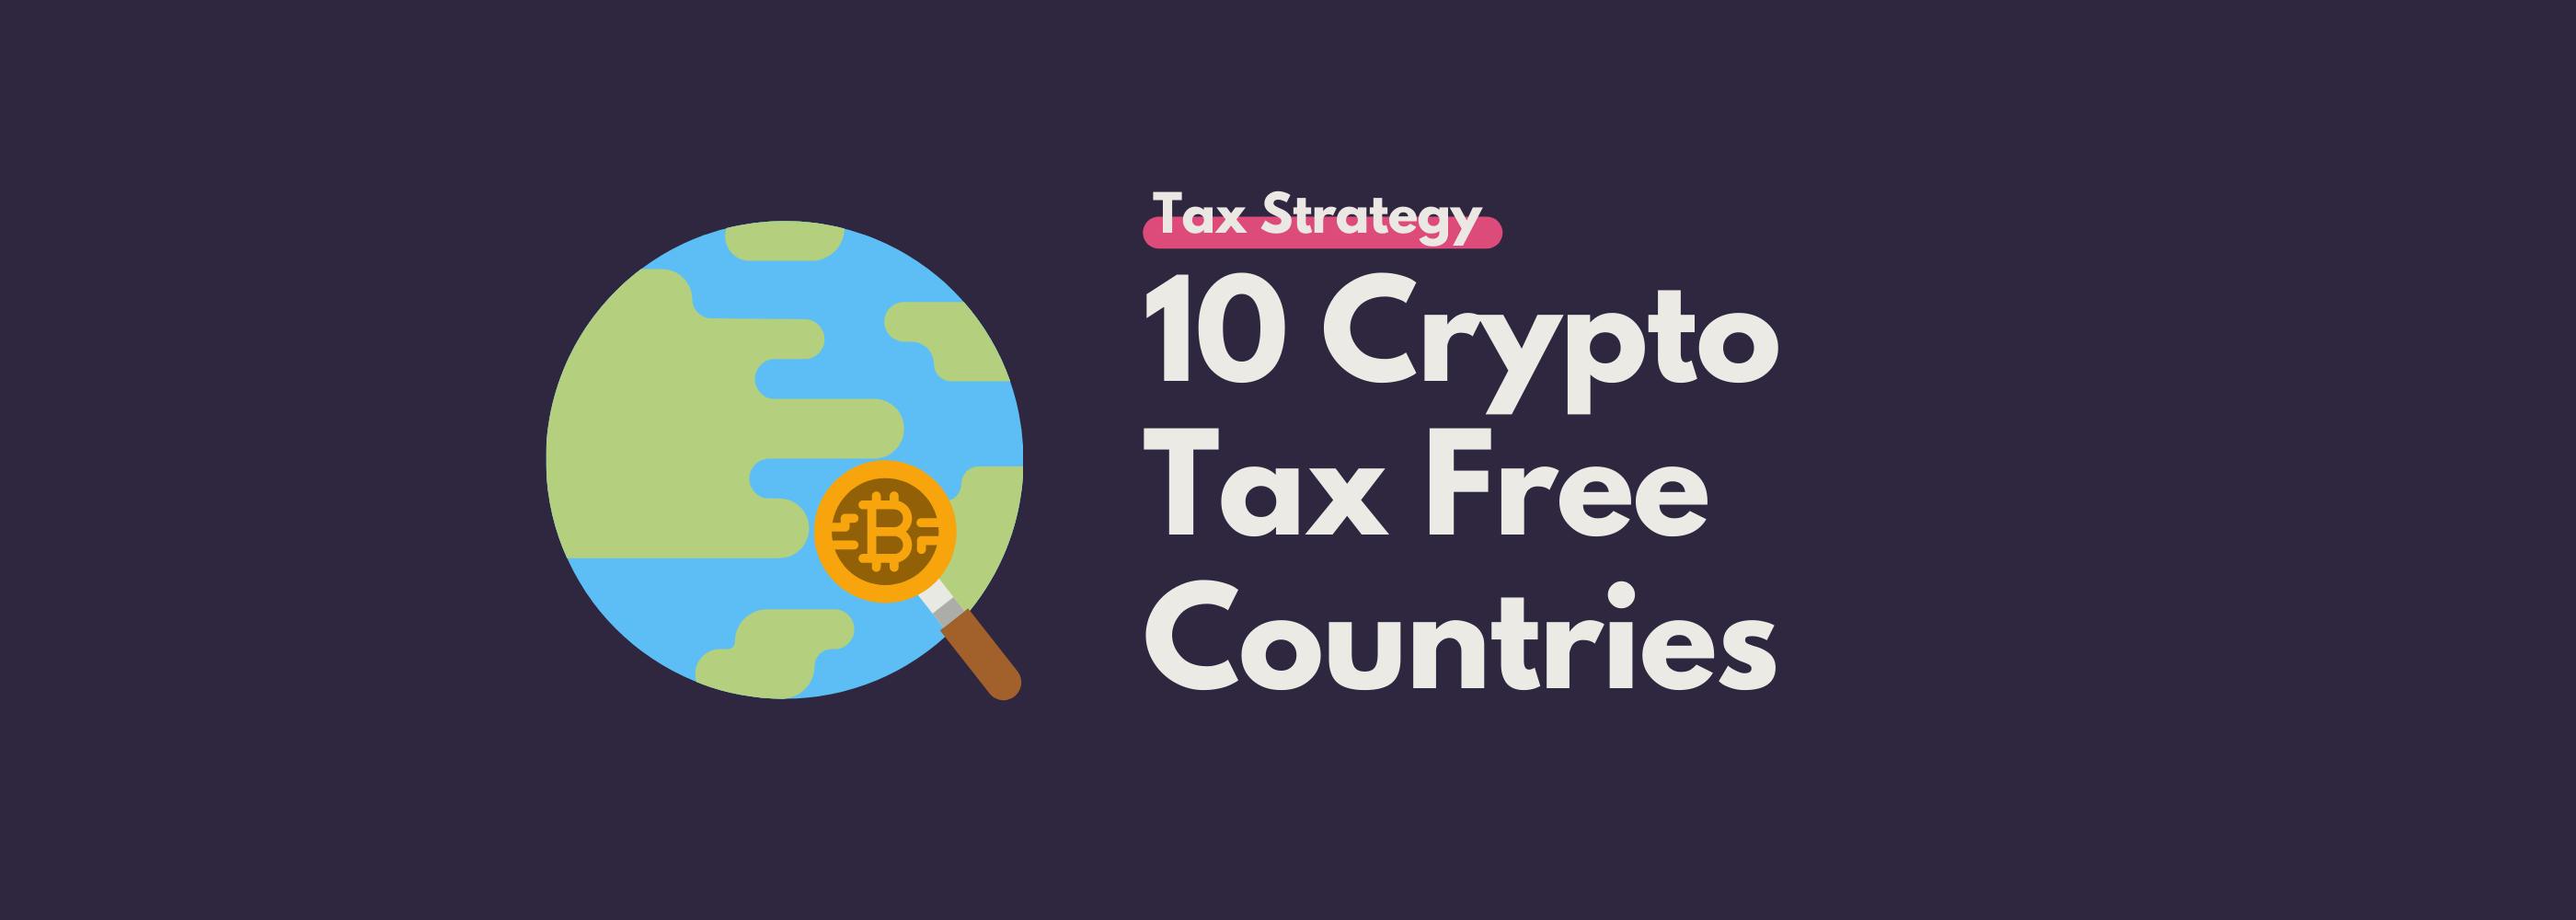 tax free crypto